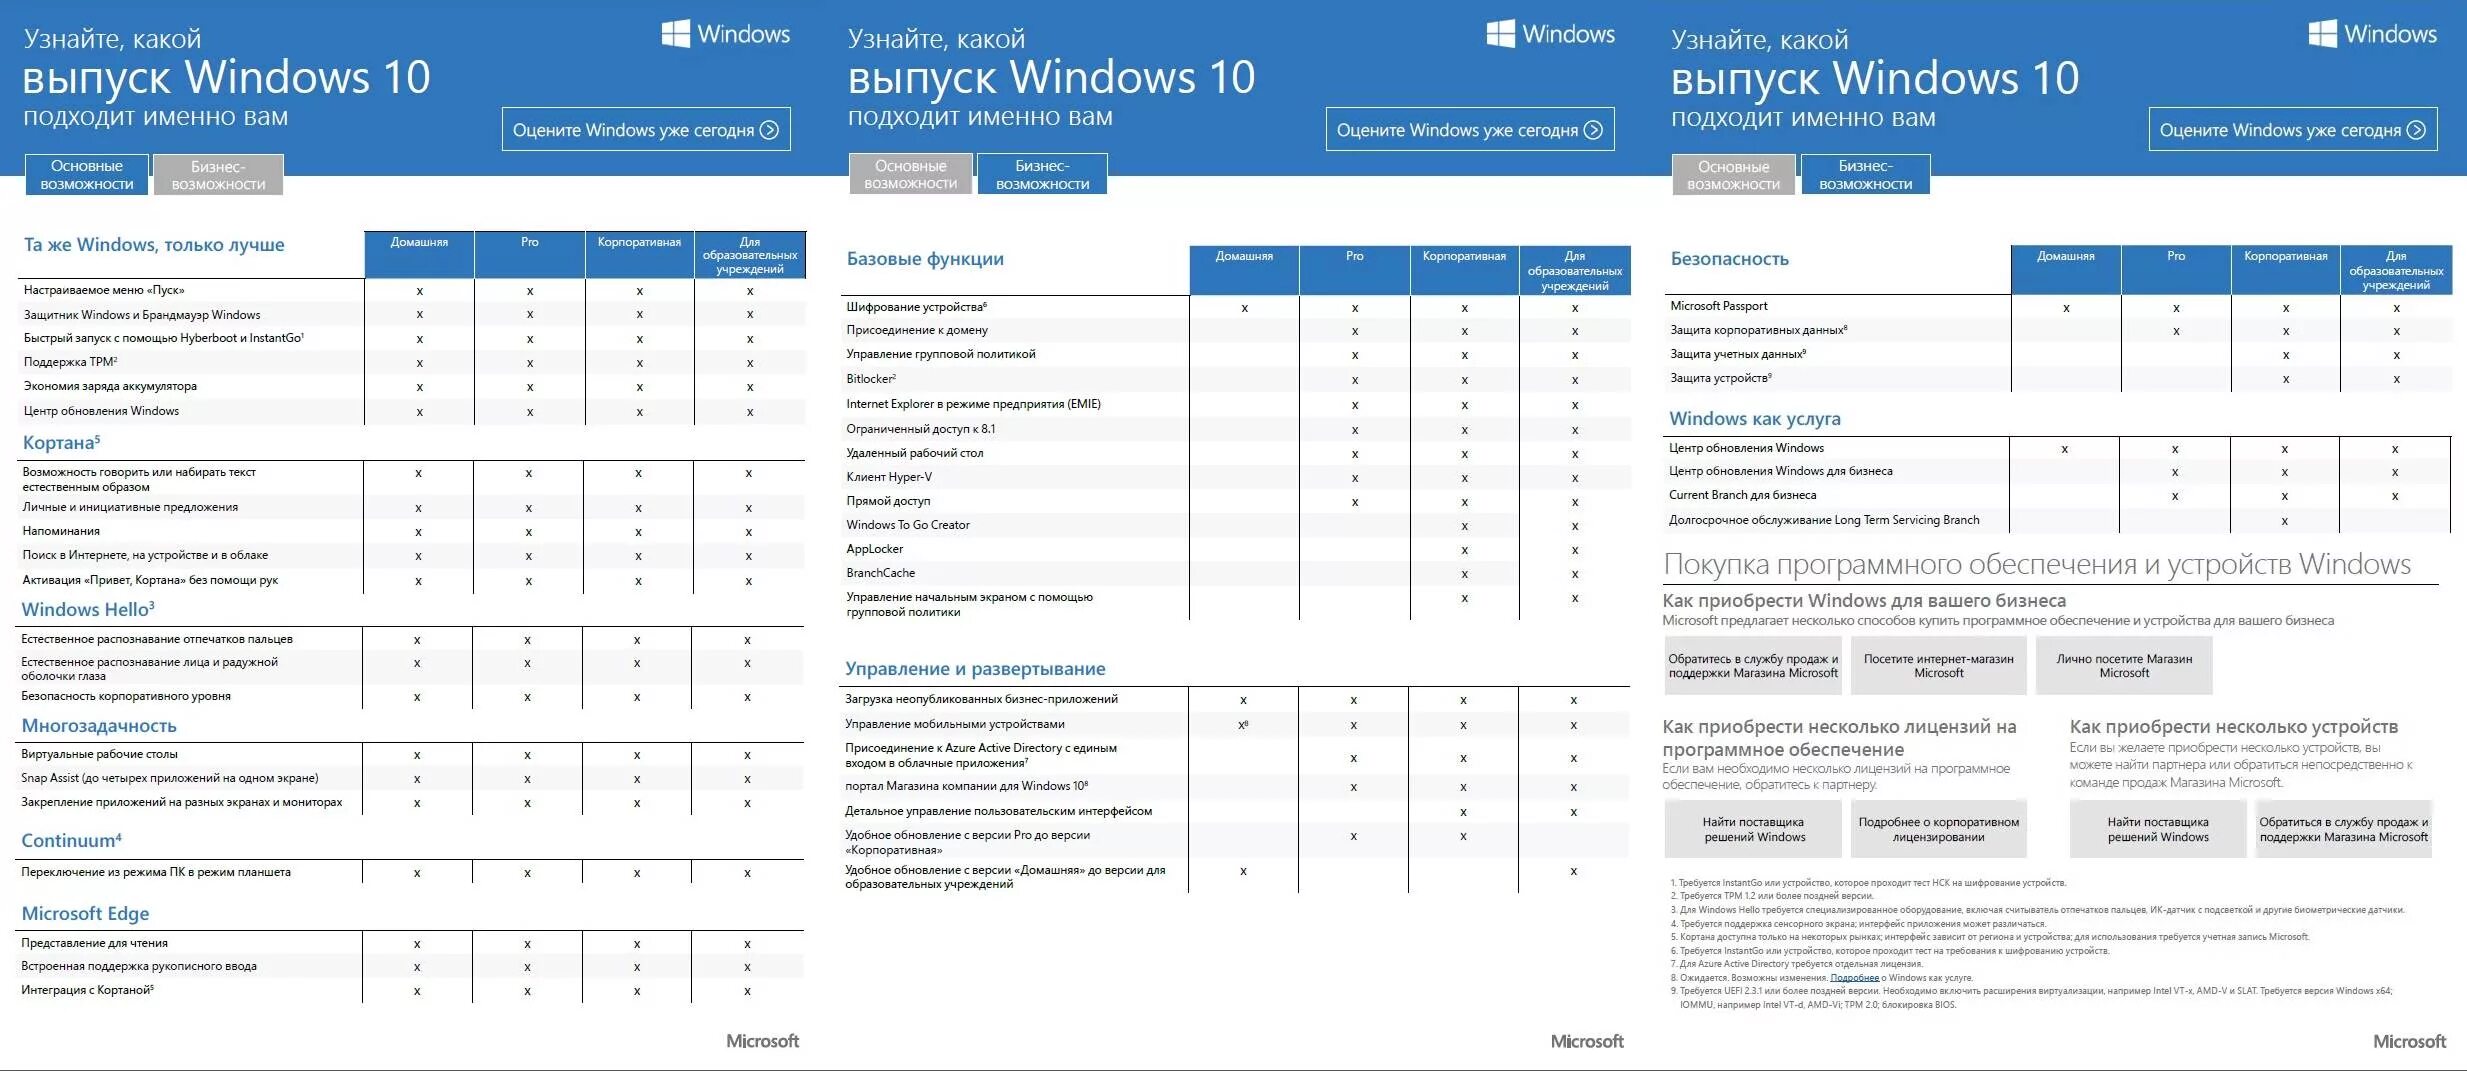 Отличие windows 10. Редакции Windows 10 таблица. Редакции виндовс 7 таблица. Сравнение редакций Windows. Таблица редакций виндовс 10.